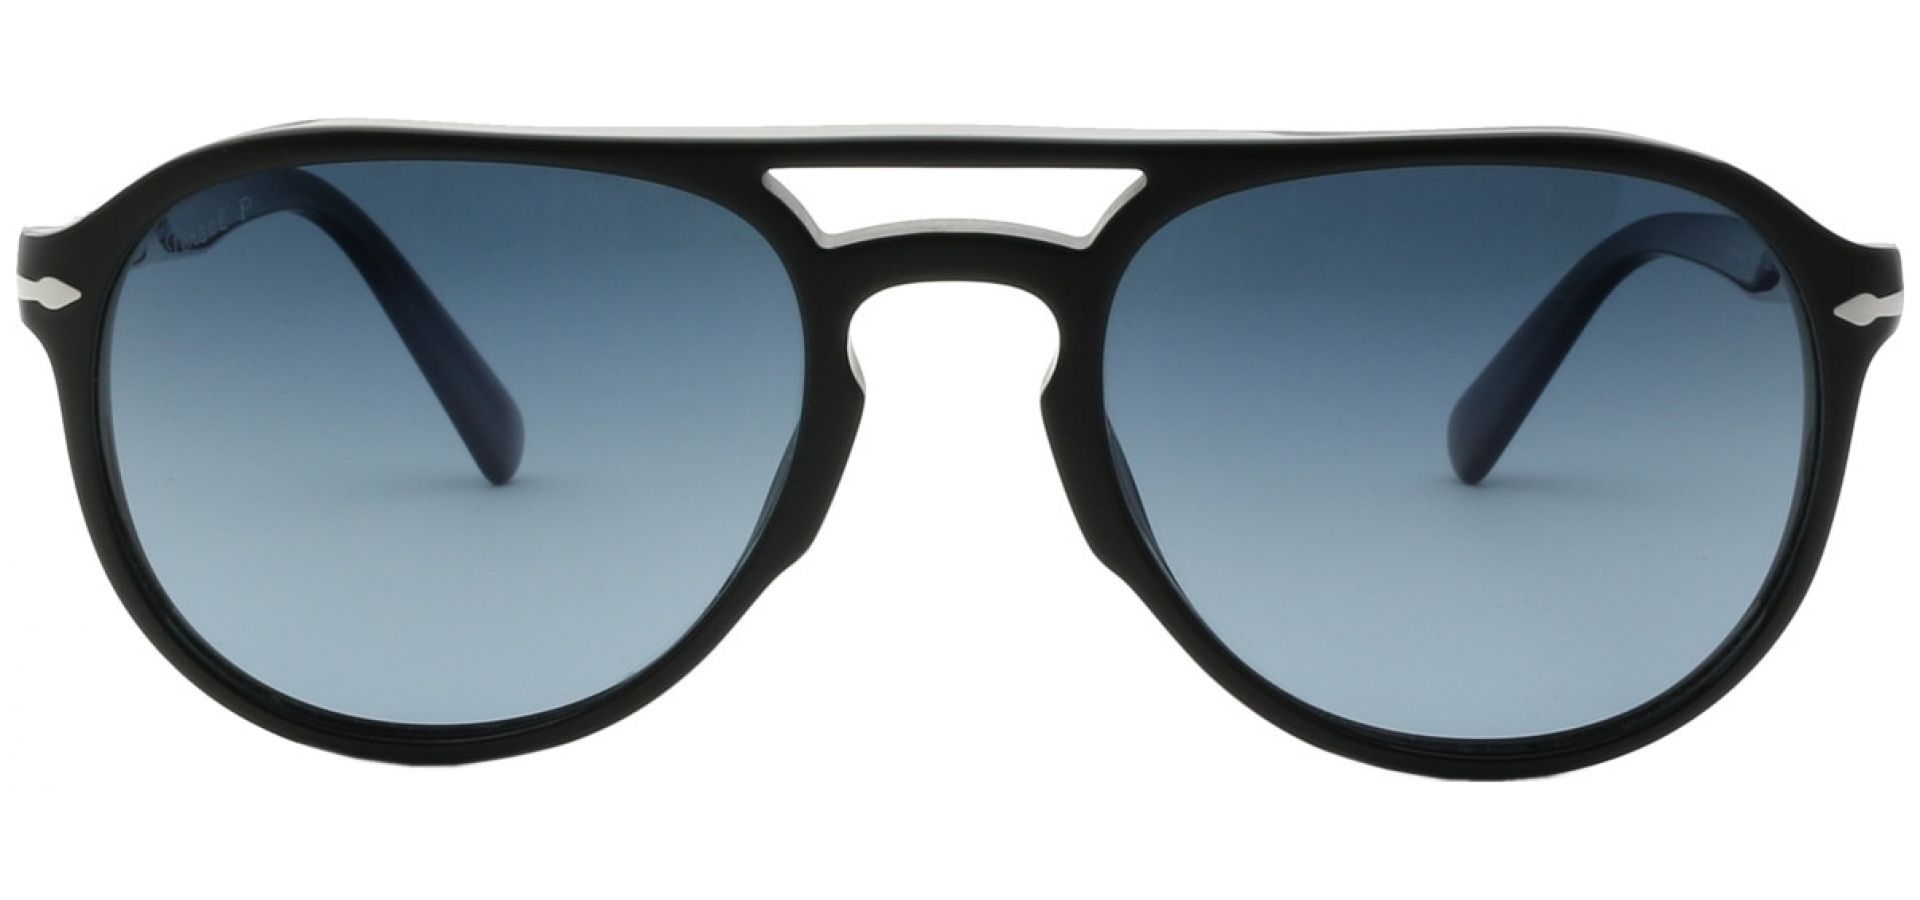 Sunčane naočale Persol 0PO3235S 55 95/S3: Boja: Black, Veličina: 55-20-145, Spol: muške, Materijal: acetat, Vrsta leće: polarizirane